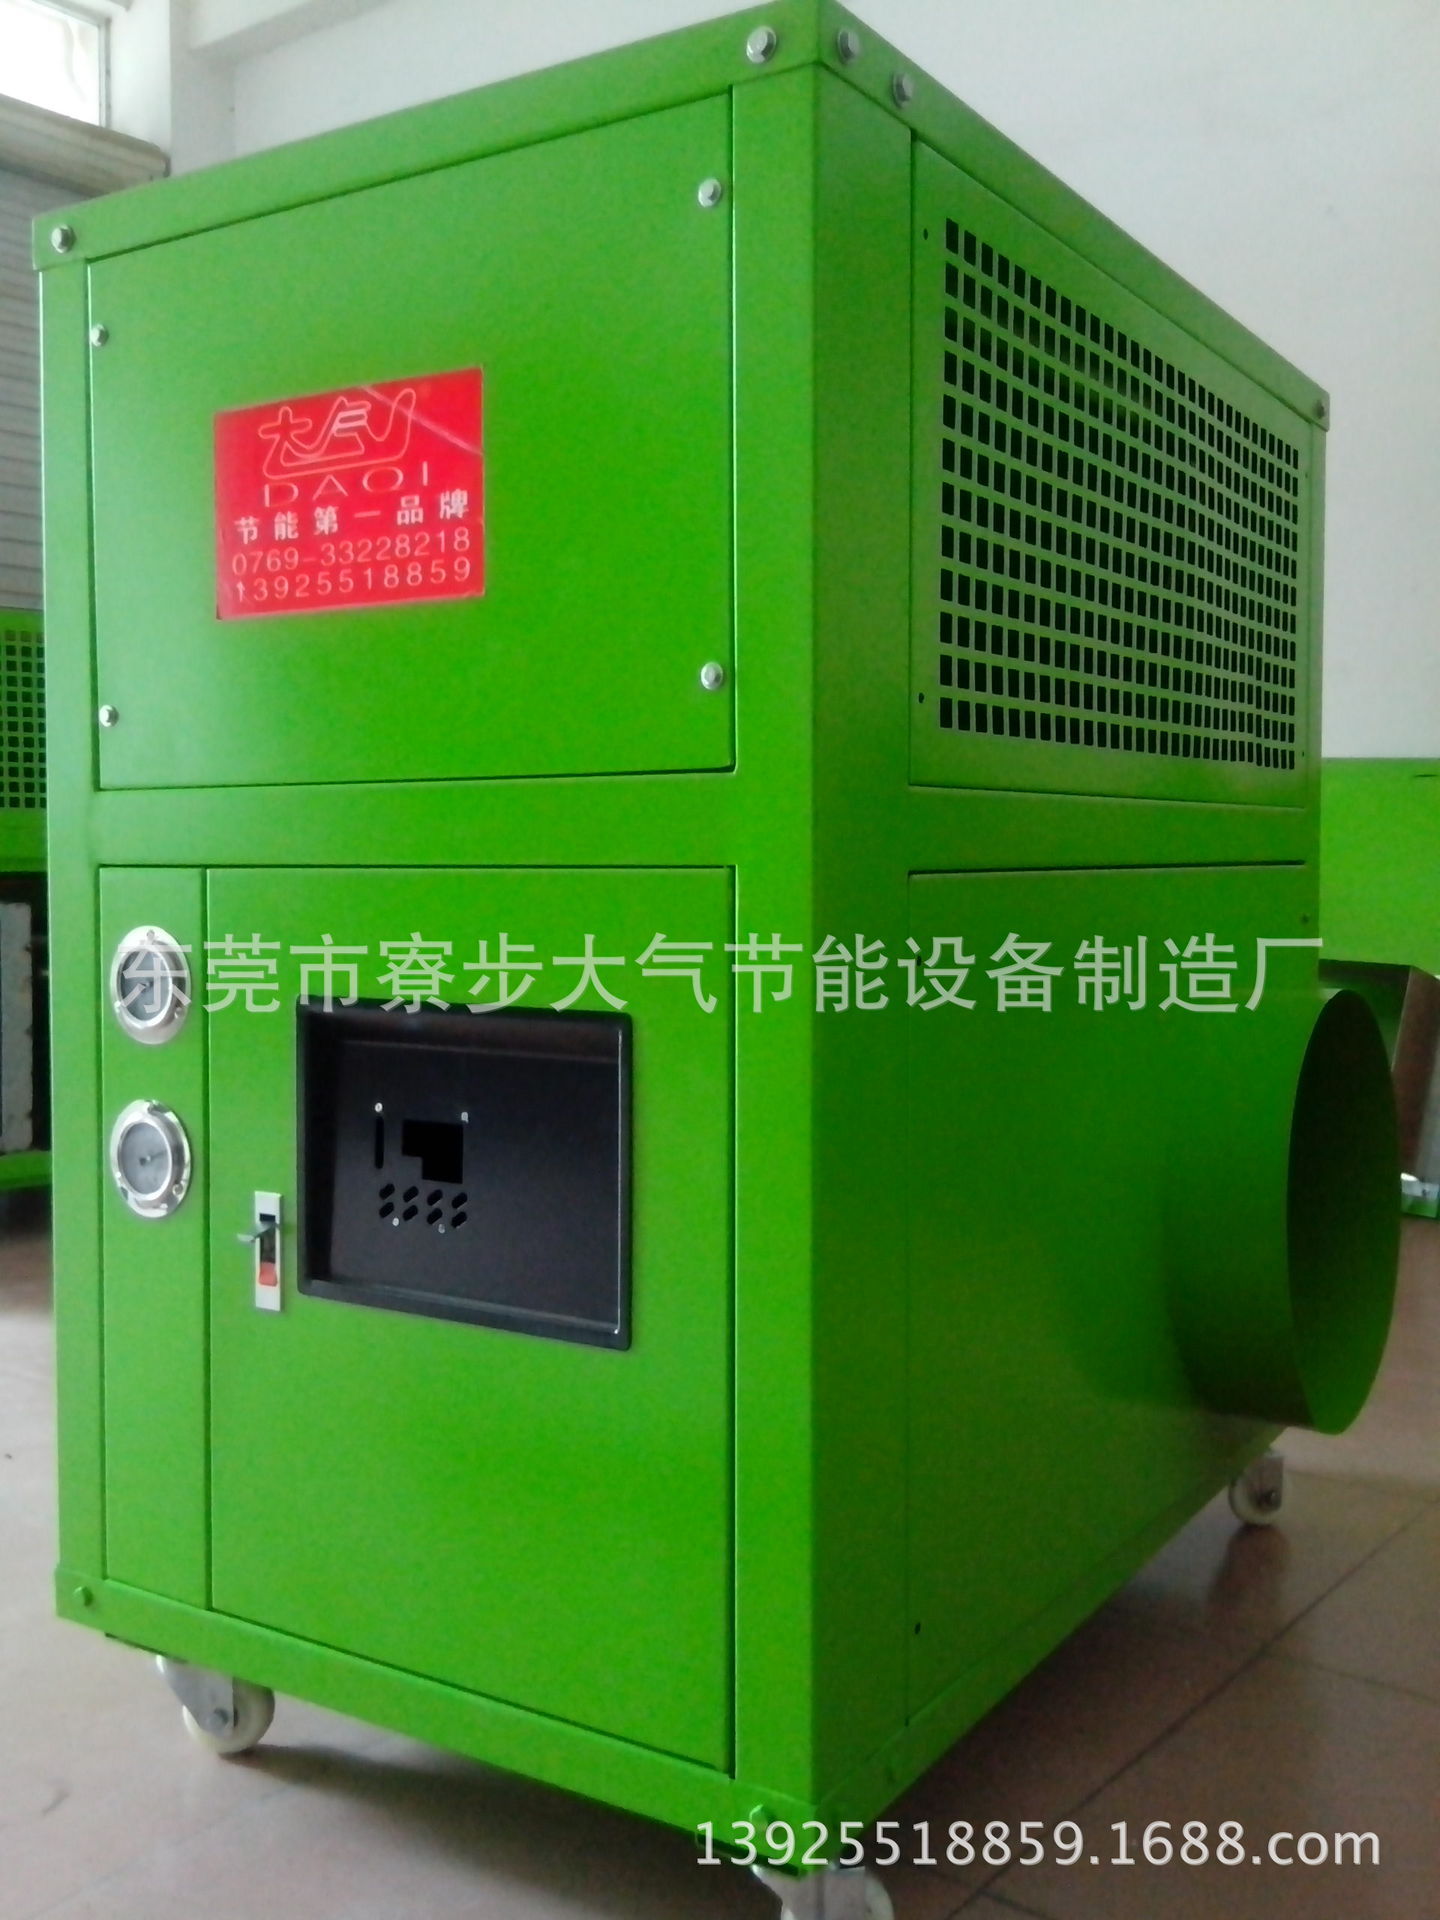 江西省南昌市厂家直销 优质木材烘干房 木材烘干干燥设备 可定制